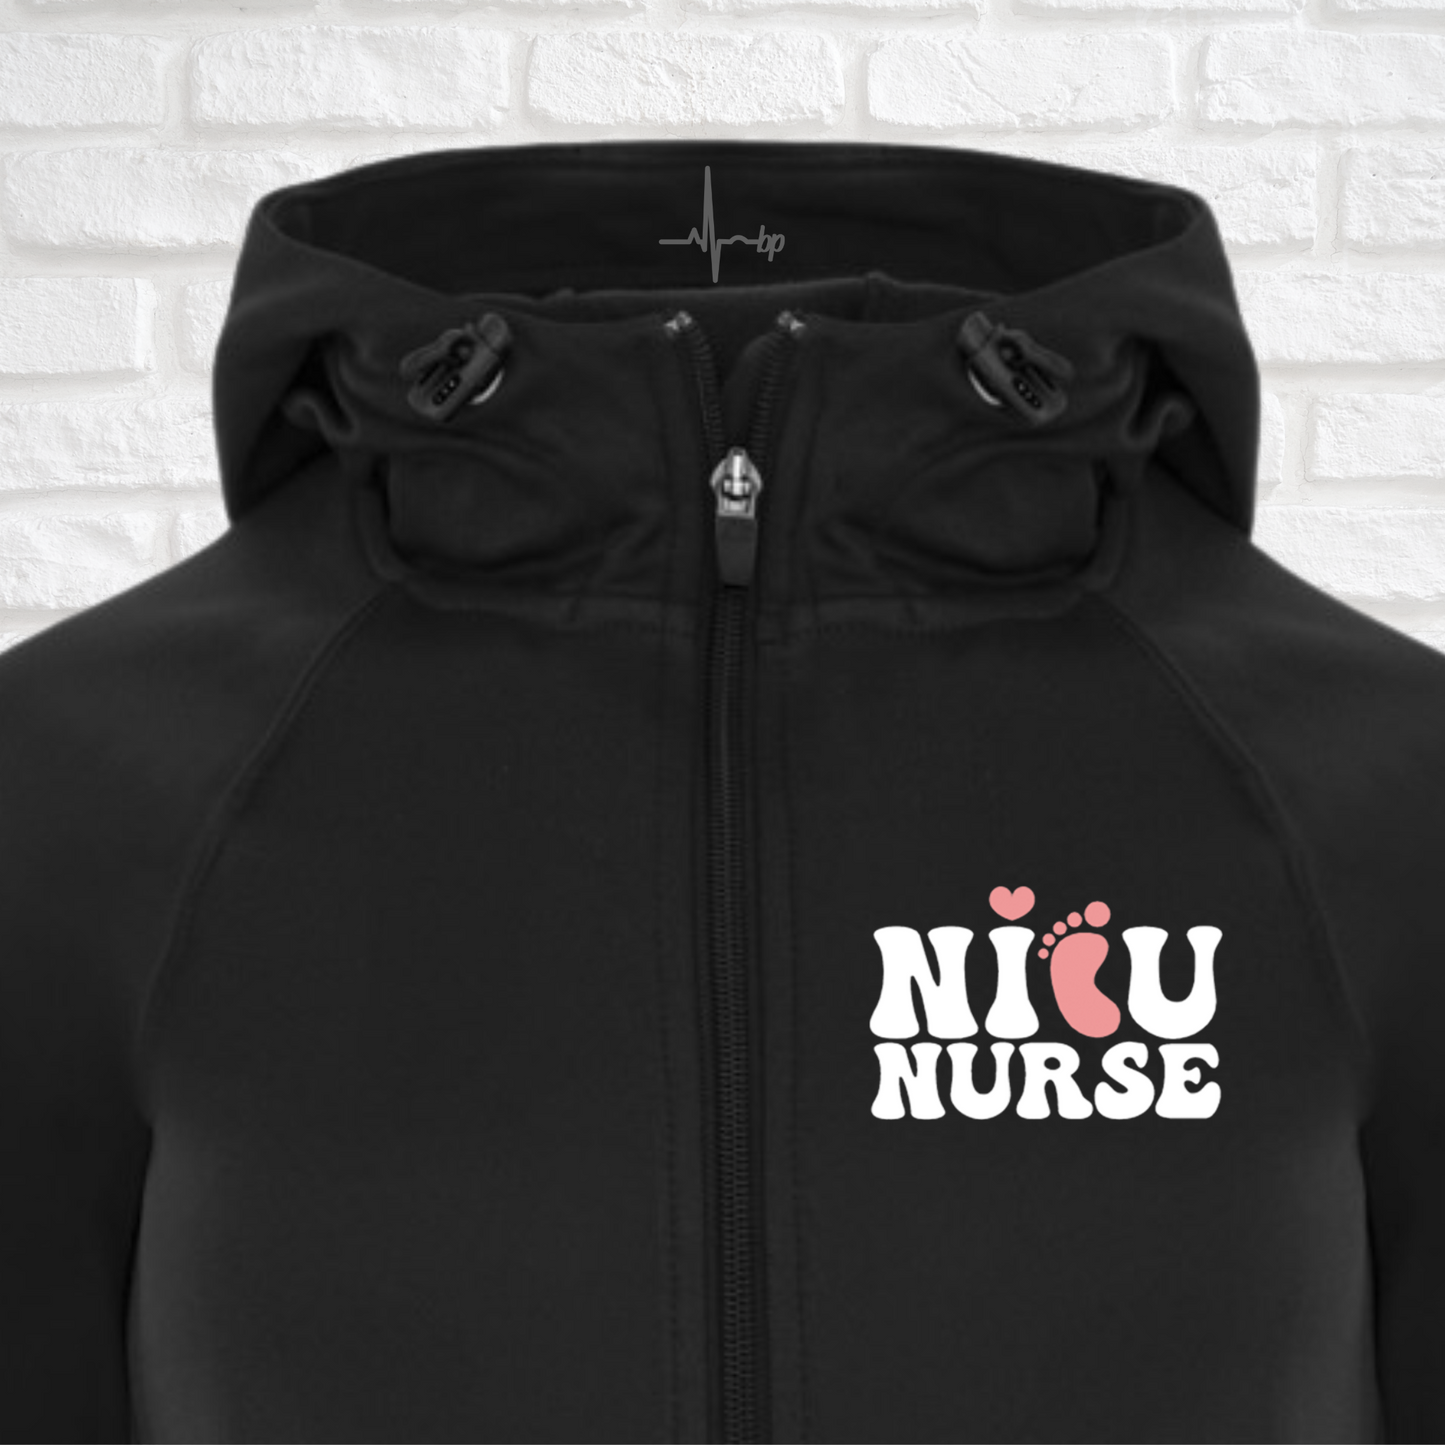 NICU nurse jacket